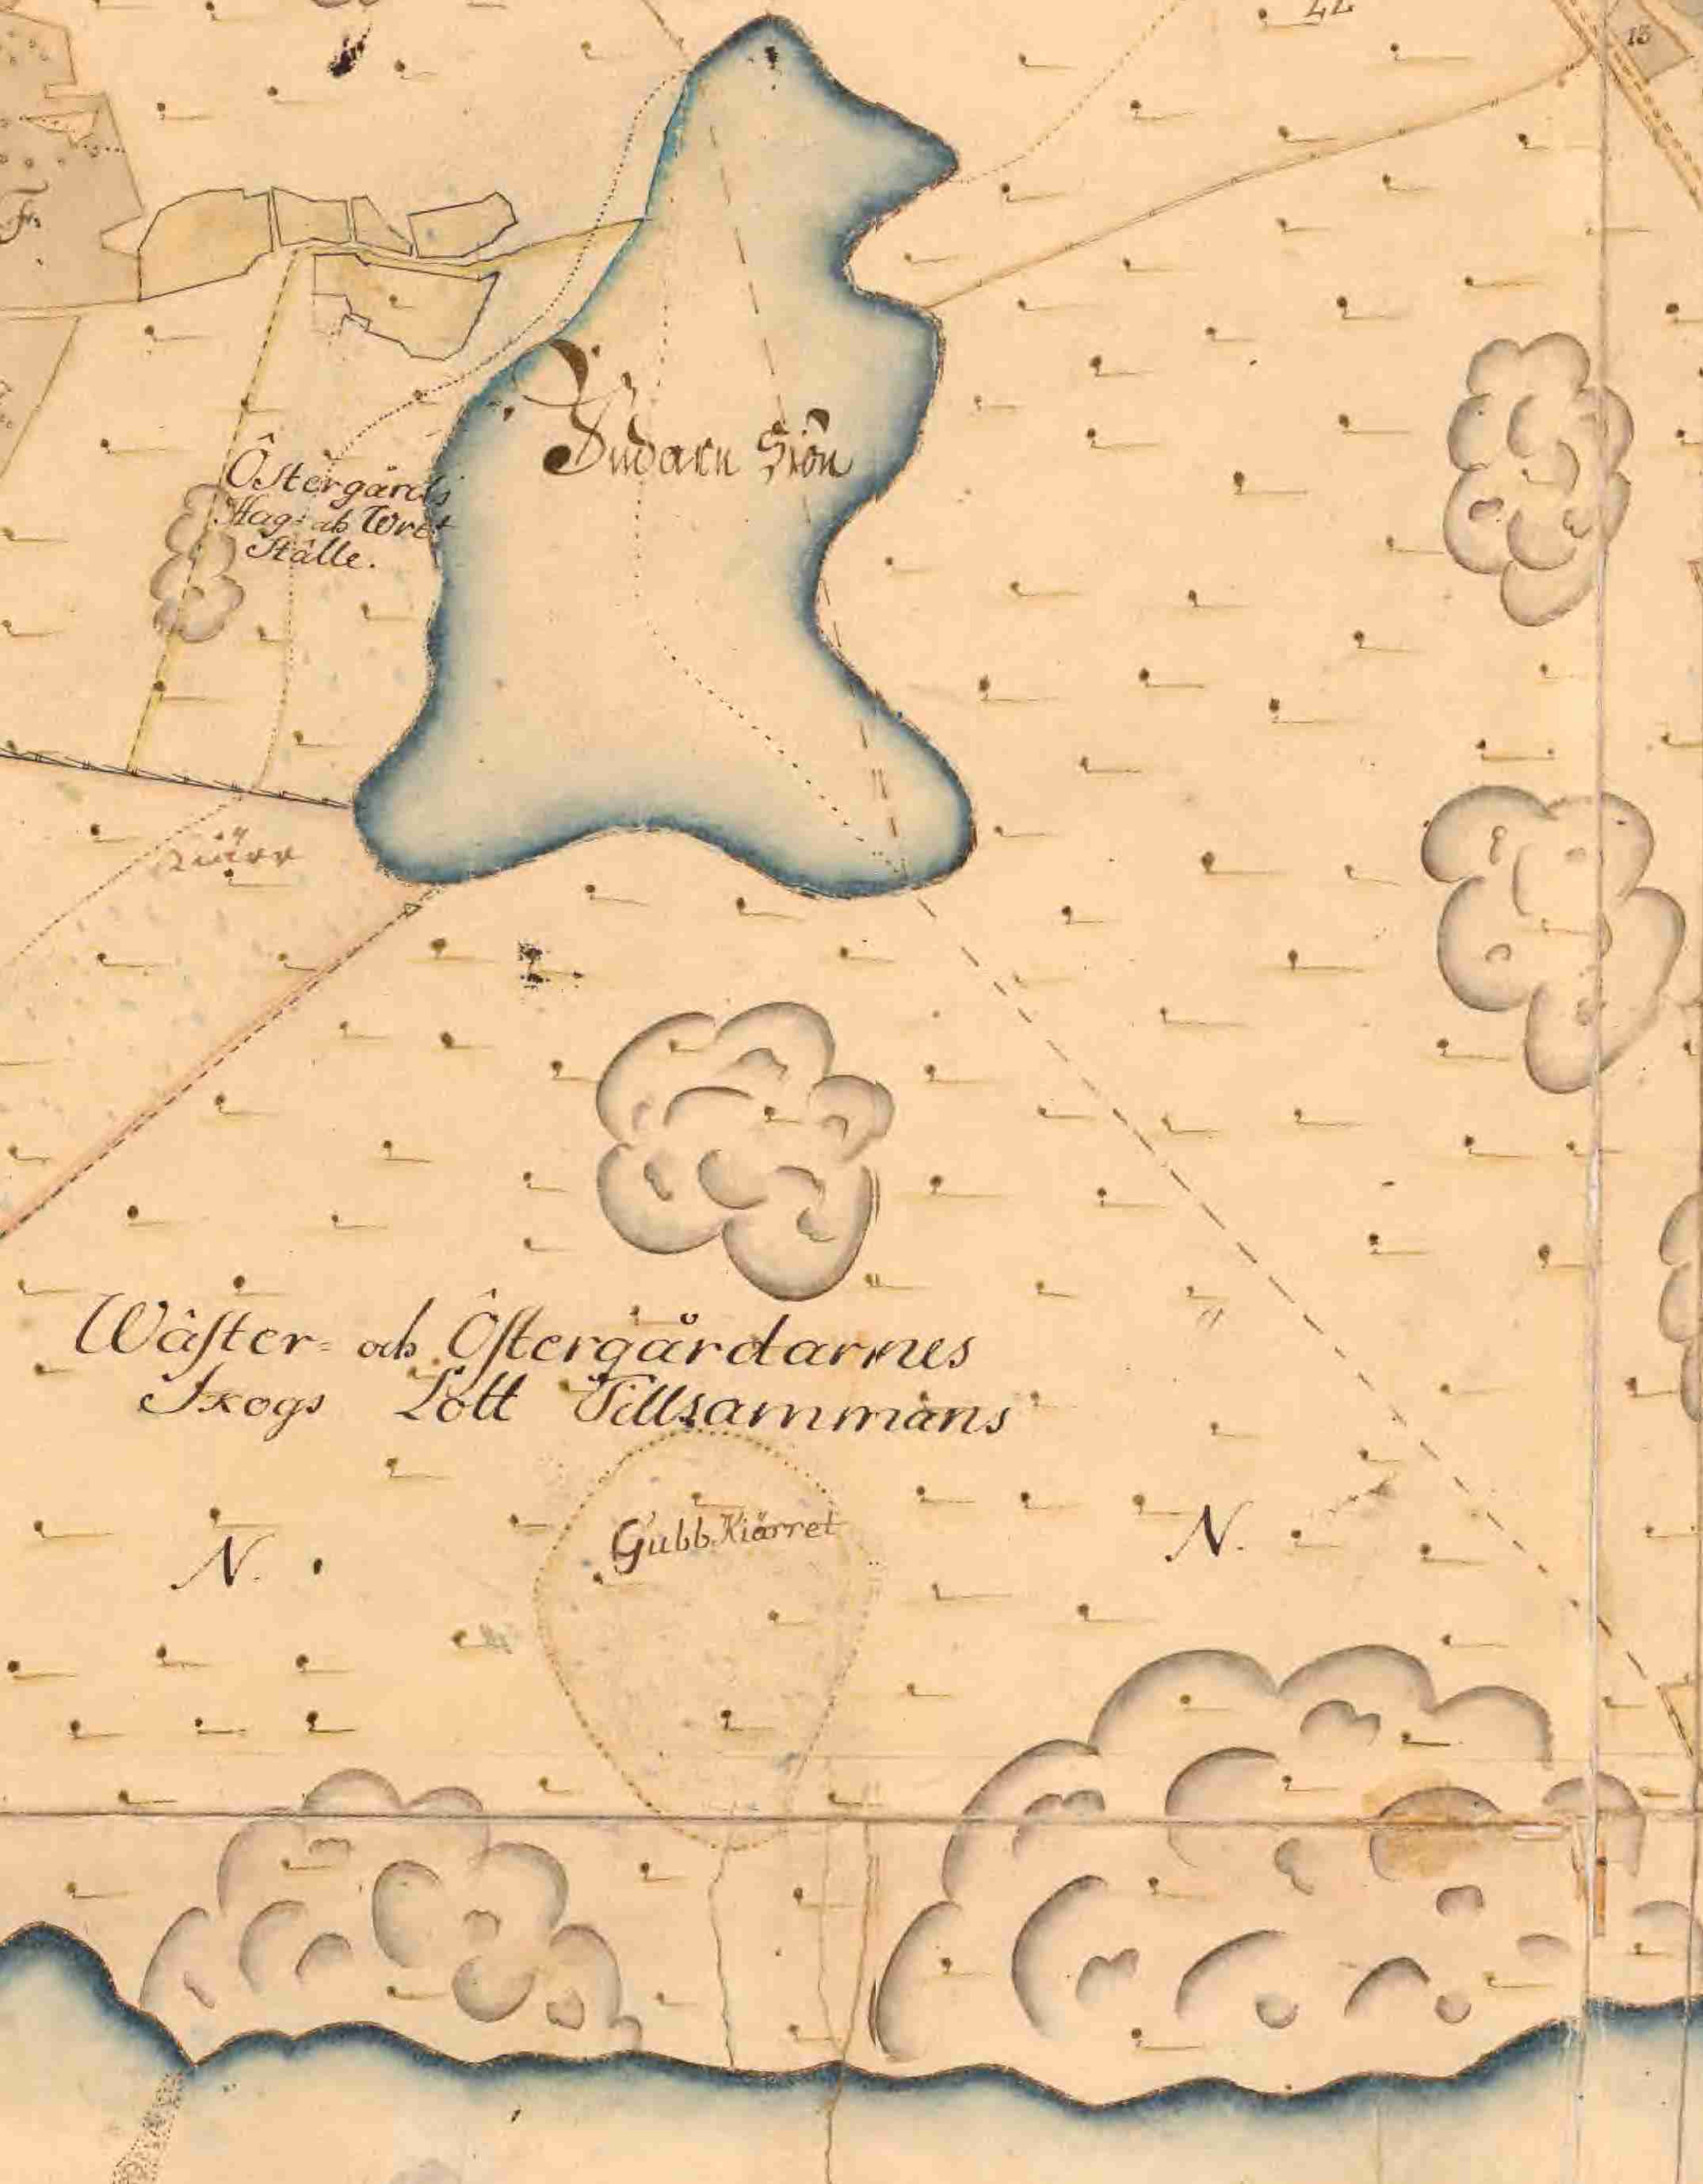 Utsnitt av karta från 1706 med namnet Gubbkärret.